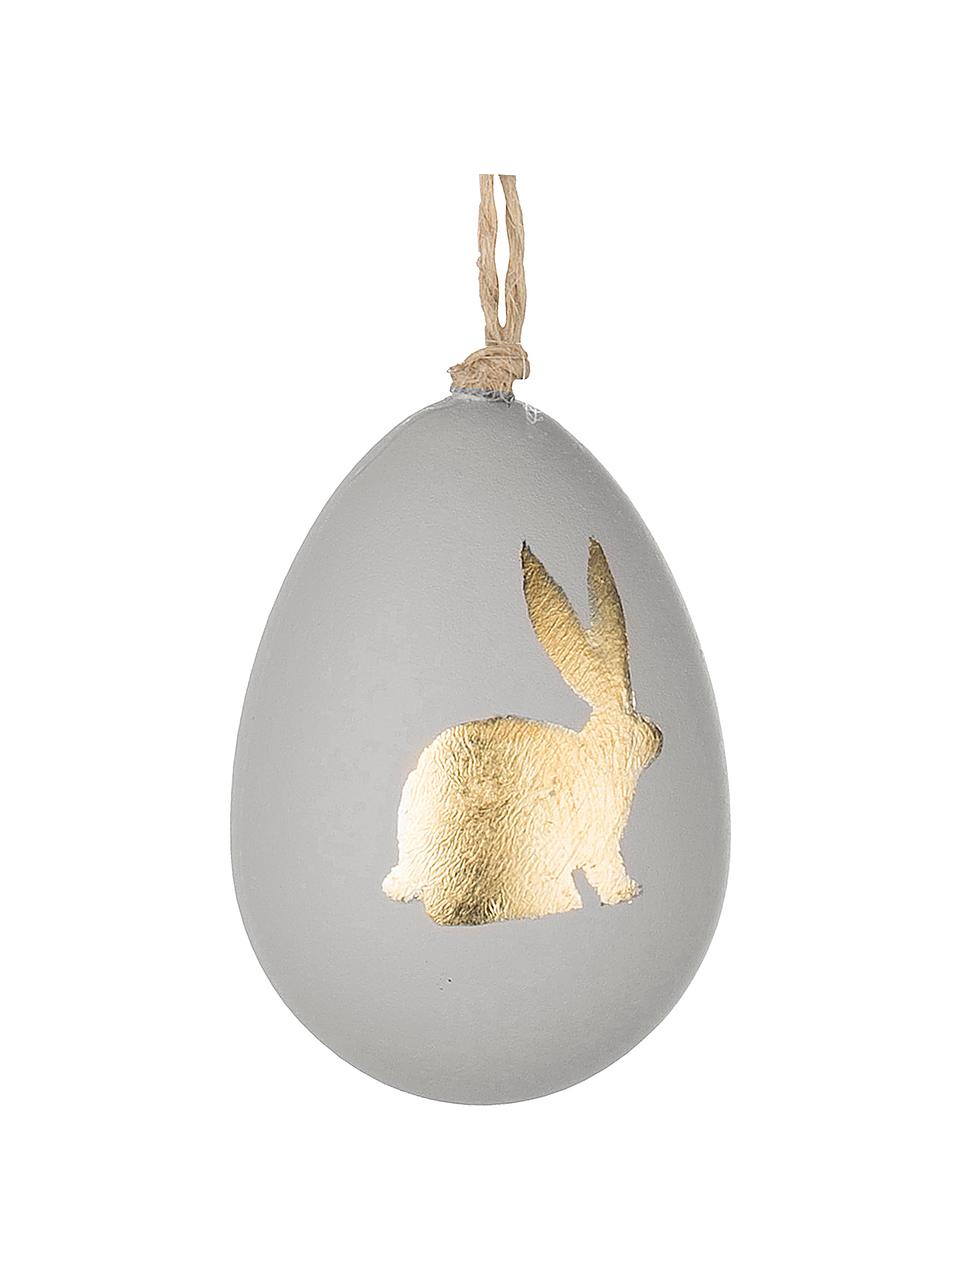 Œuf de Pâques à suspendre Bunny, 3 pièces, Gris, couleur dorée